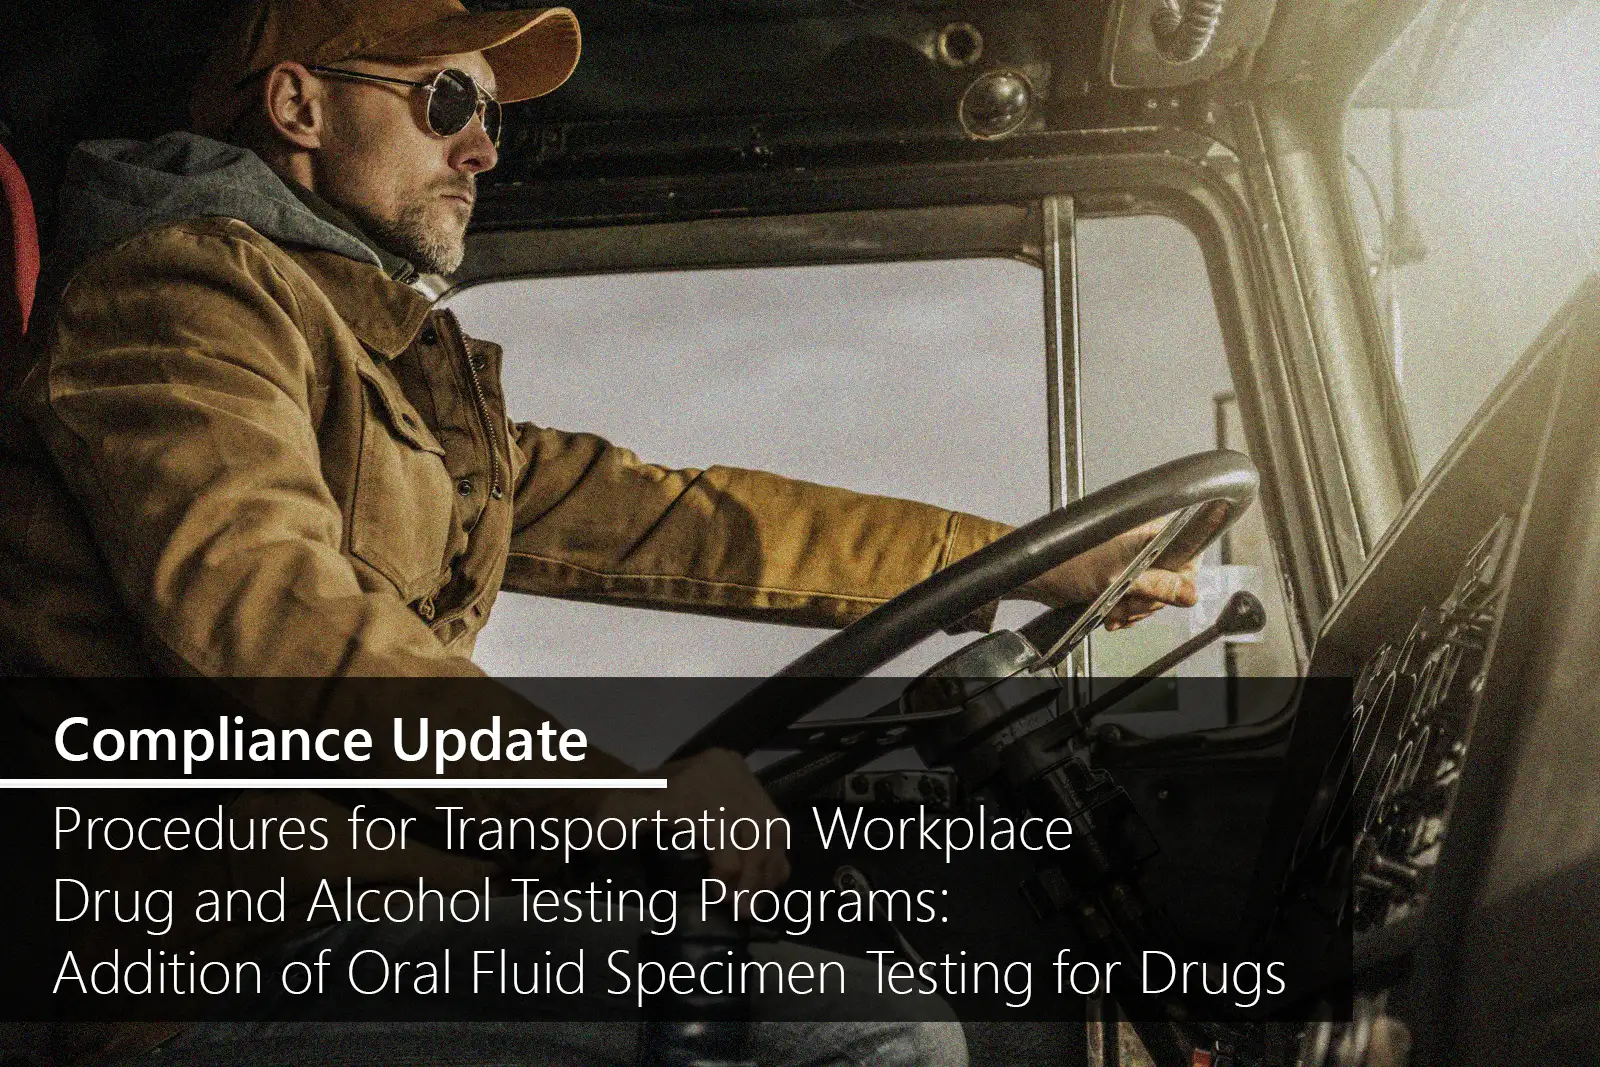 Transportation Workplace Drug Tests: Final Rule Includes Oral Fluid